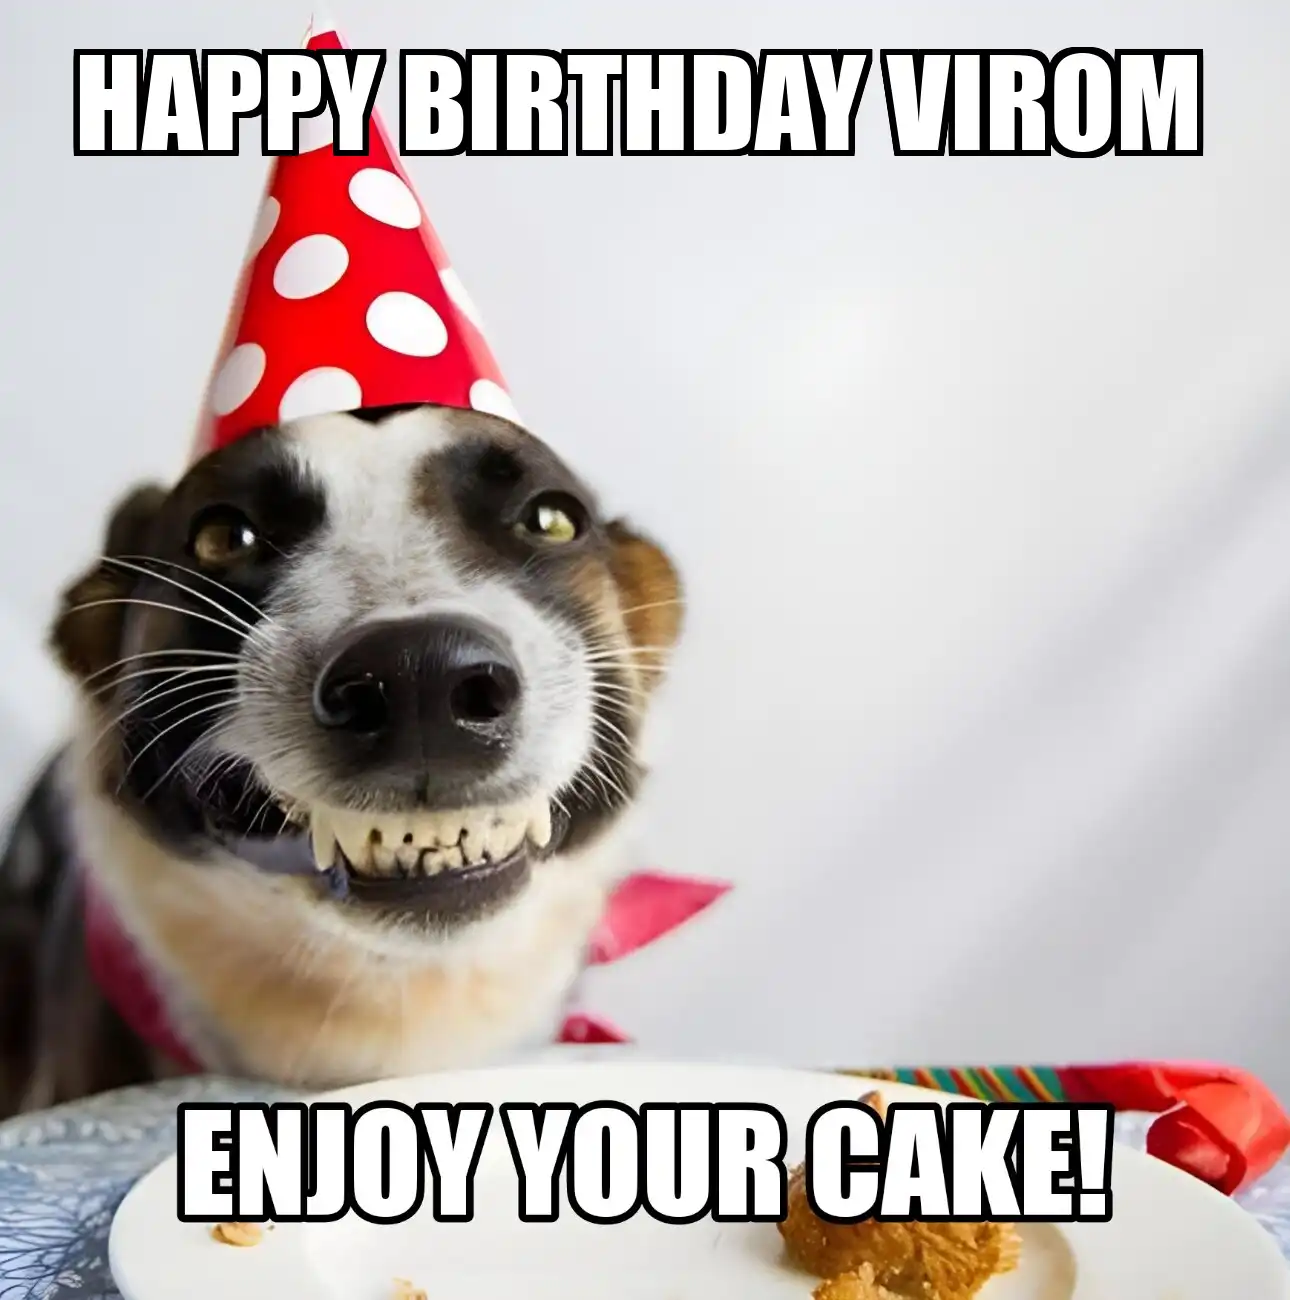 Happy Birthday Virom Enjoy Your Cake Dog Meme